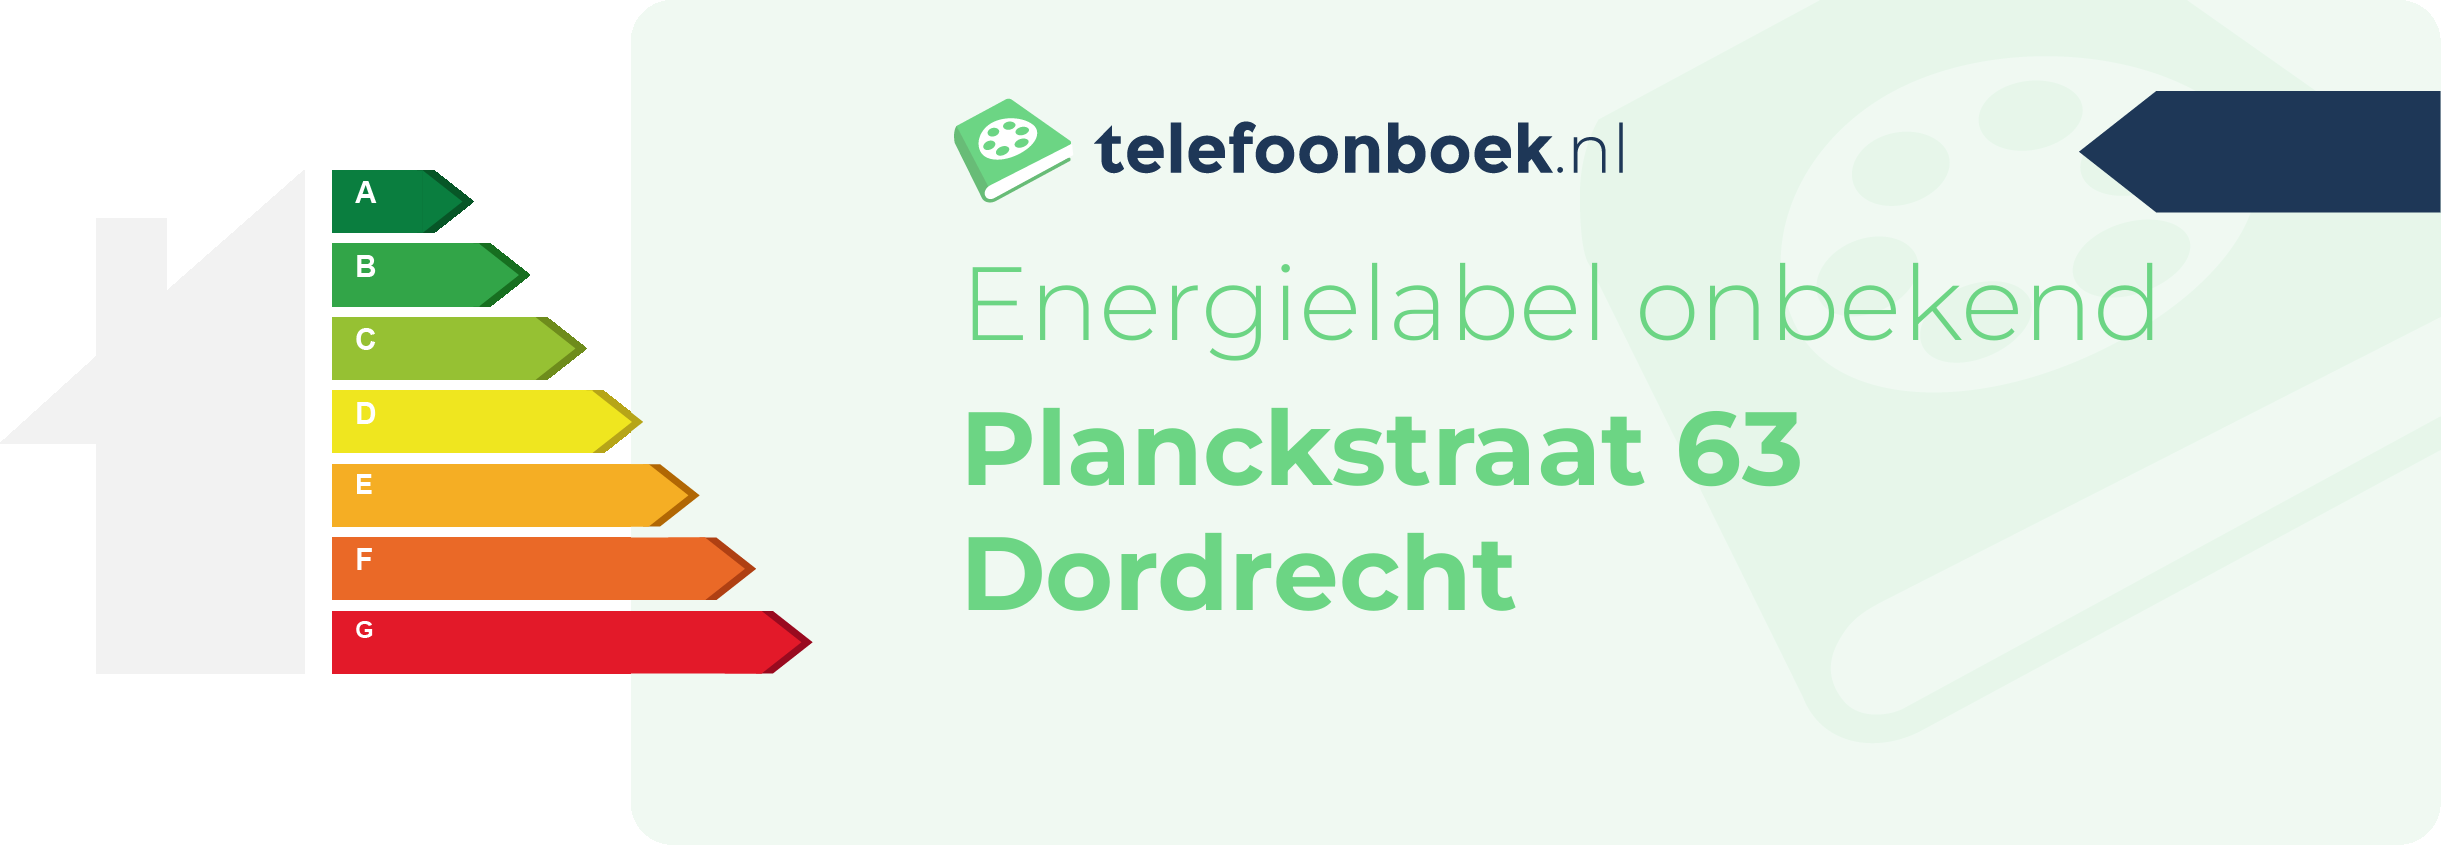 Energielabel Planckstraat 63 Dordrecht